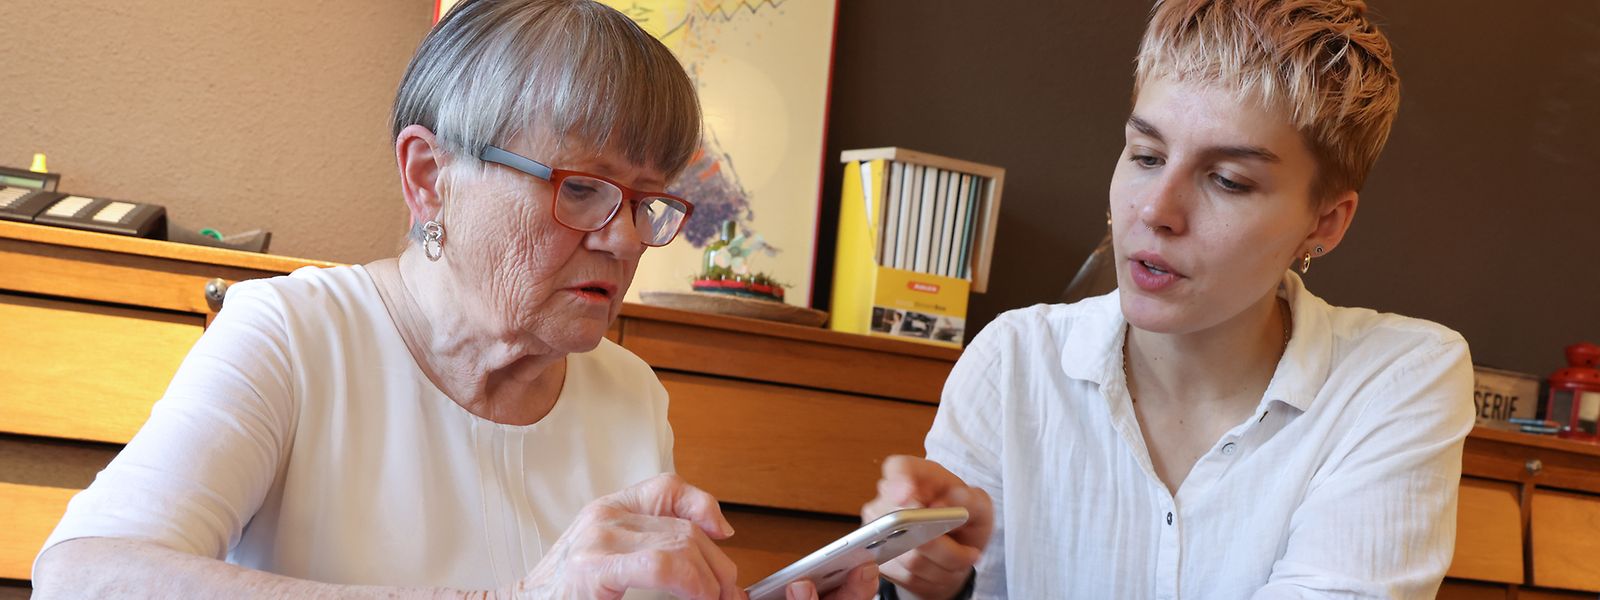 Den Anschluss im Alter nicht verlieren: Als Co-Gründerin der Asbl GoldenMe berät Mara Kroth regelmäßig Seniorinnen und Senioren im Umgang mit ihrem Smartphone, Tablet oder Laptop.  